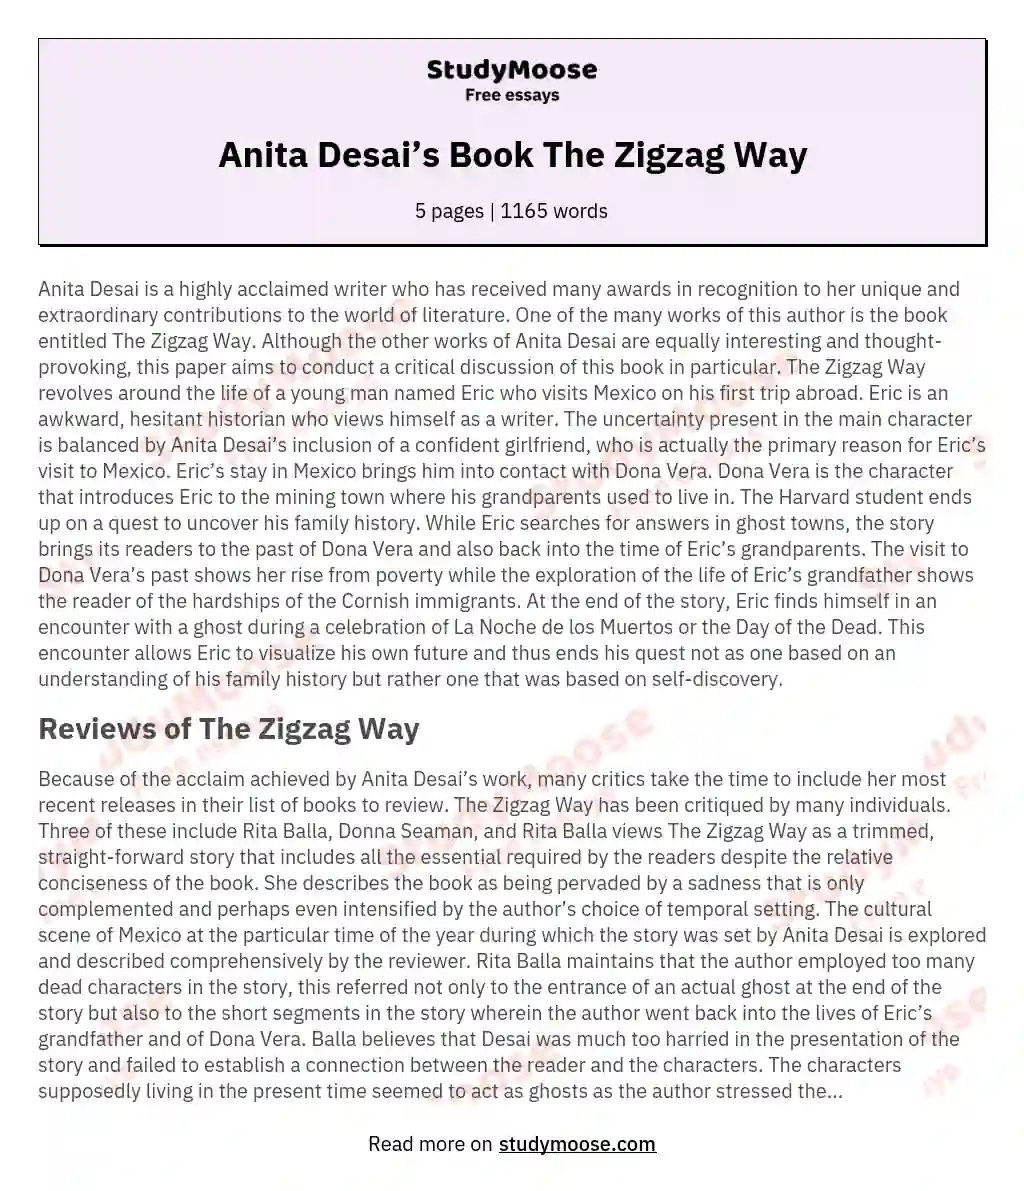 Anita Desai’s Book The Zigzag Way essay